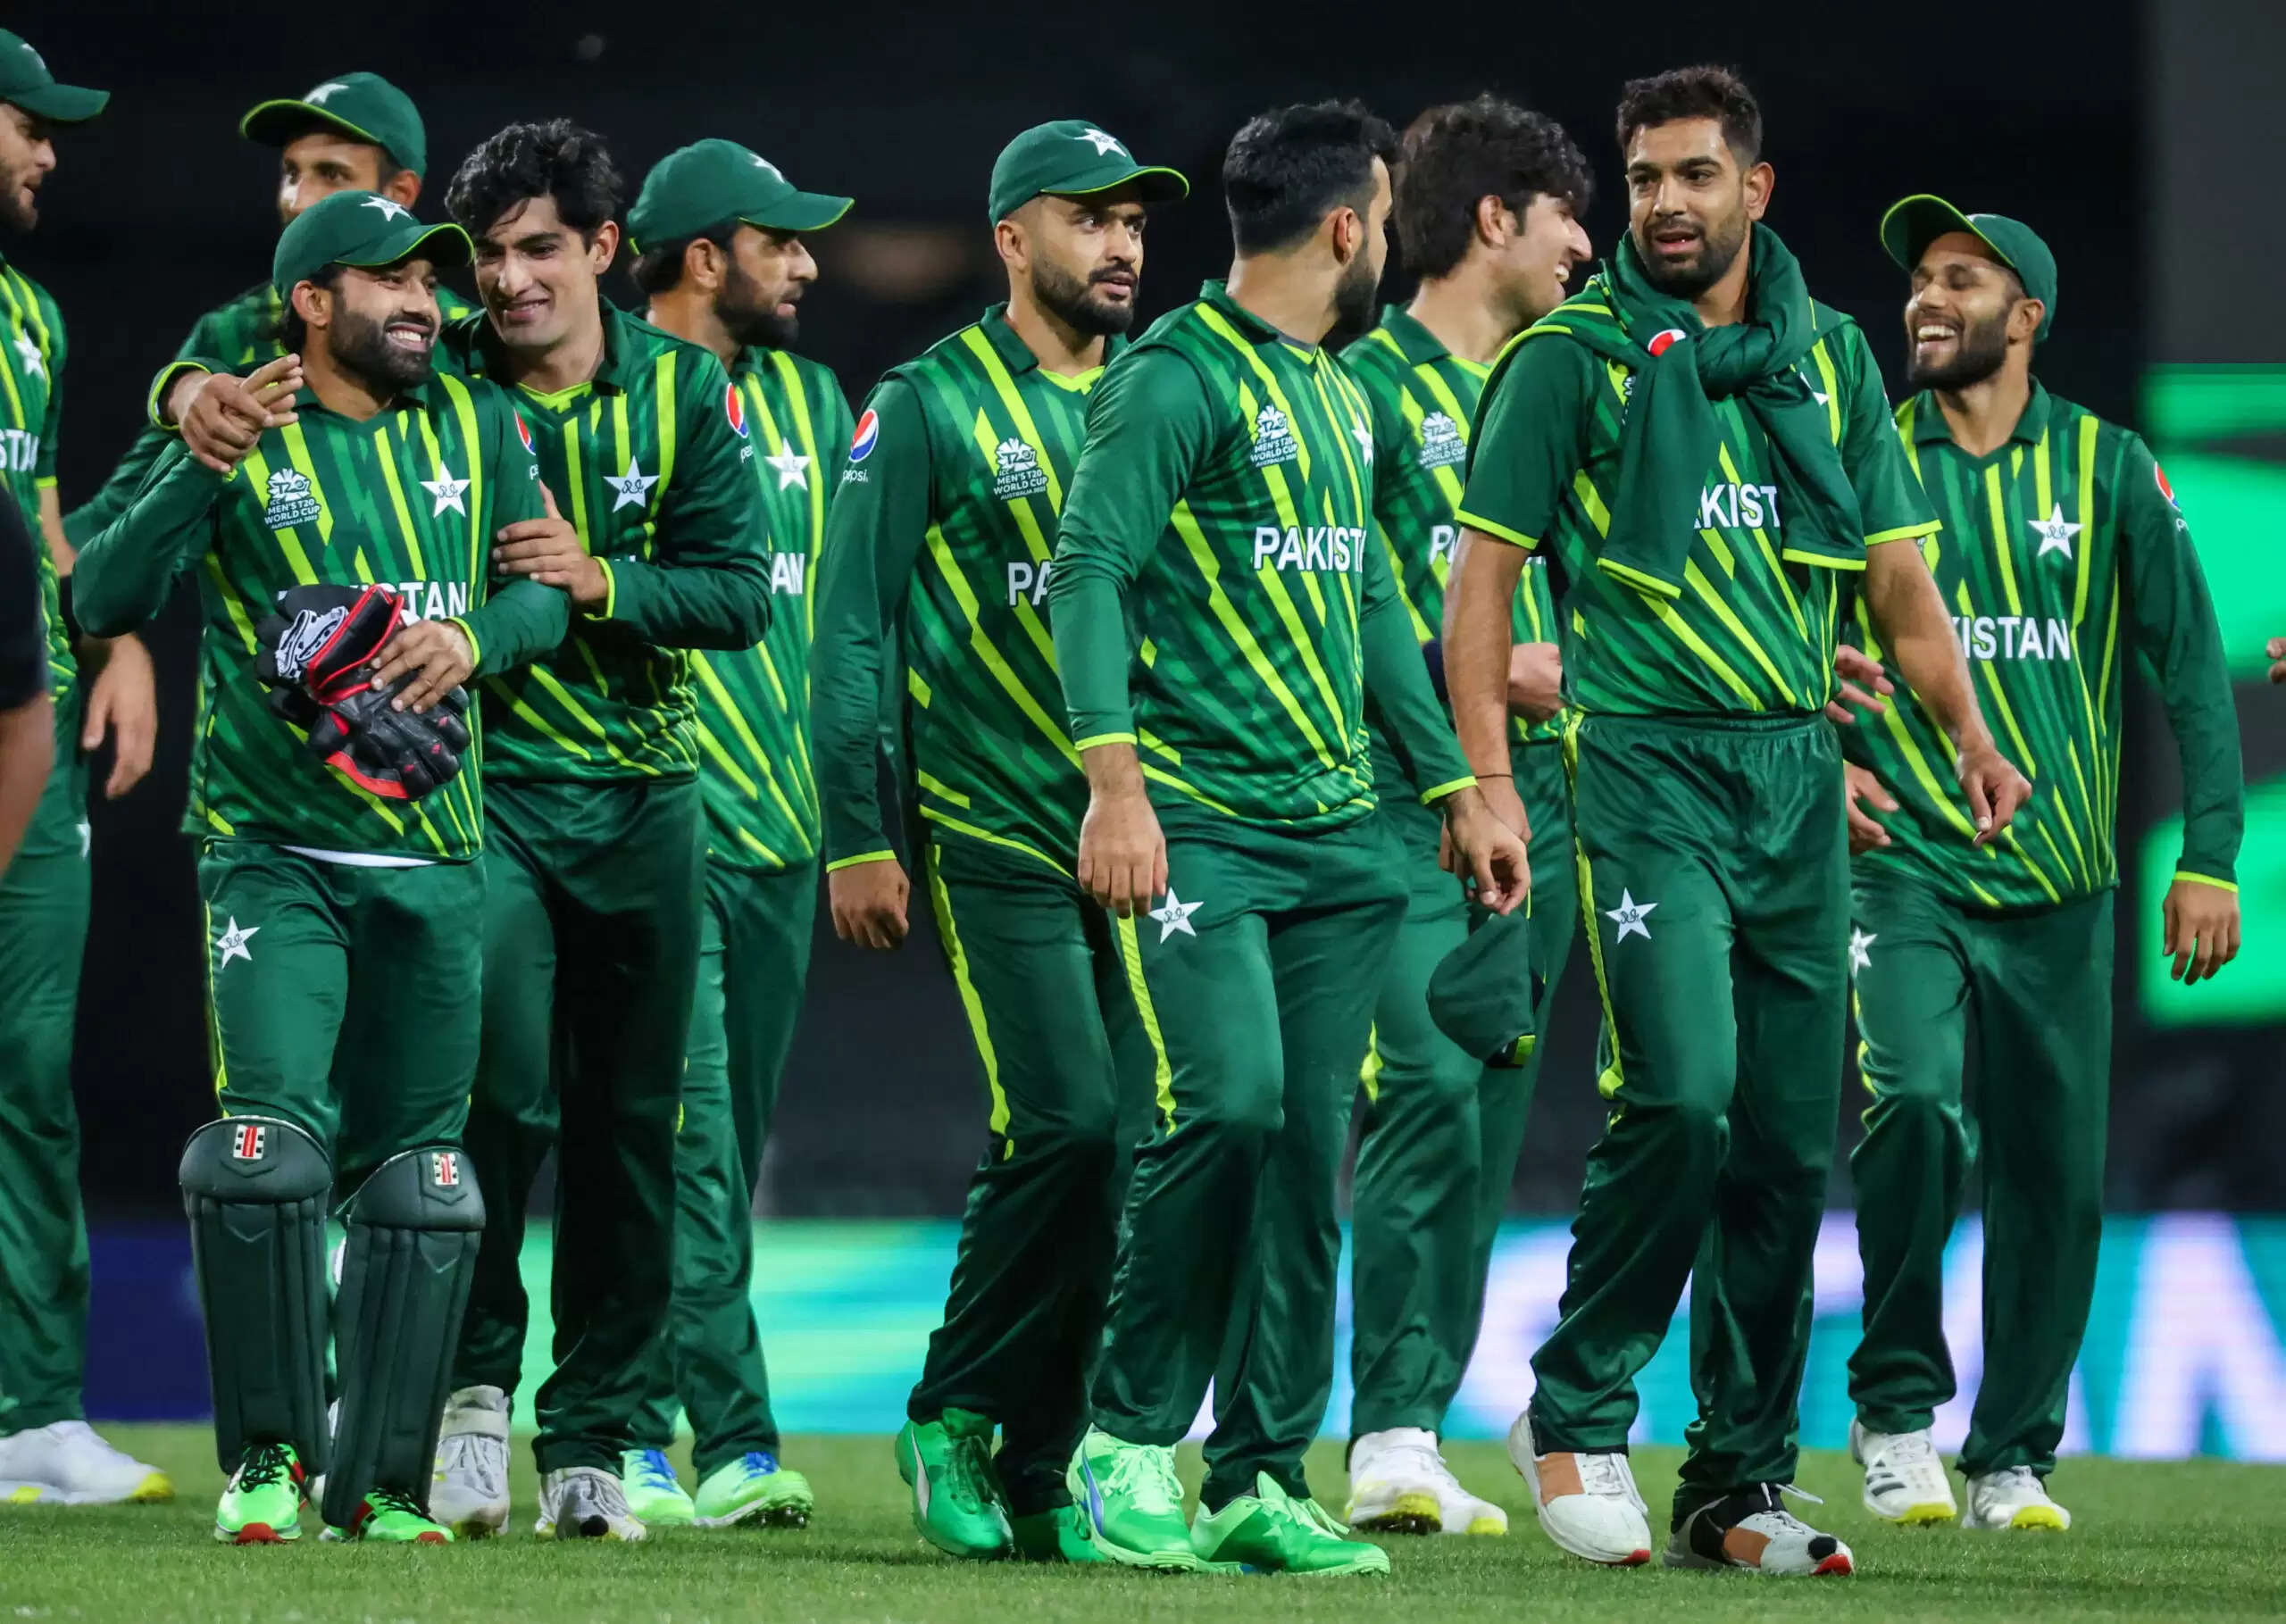 2023 विश्व कप शुरू होने में केवल 15 दिन शेष हैं, 5 अक्टूबर को शुरू होने वाले उद्घाटन मैच में अहमदाबाद के नरेंद्र मोदी स्टेडियम में इंग्लैंड का मुकाबला न्यूजीलैंड से होगा।  जहां टीम इंडिया समेत कई टीमों ने पहले ही अपनी विश्व कप टीम की घोषणा कर दी है, वहीं पाकिस्तान की क्रिकेट टीम ने अभी तक अपने रोस्टर को अंतिम रूप नहीं दिया है। ऐसी अटकलें हैं कि टीम के अनुभवी खिलाड़ी जिसने 10 शतक और 15 अर्धशतकों लगाएं , फखर जमान को टीम से बाहर किया जा सकता हैँ।